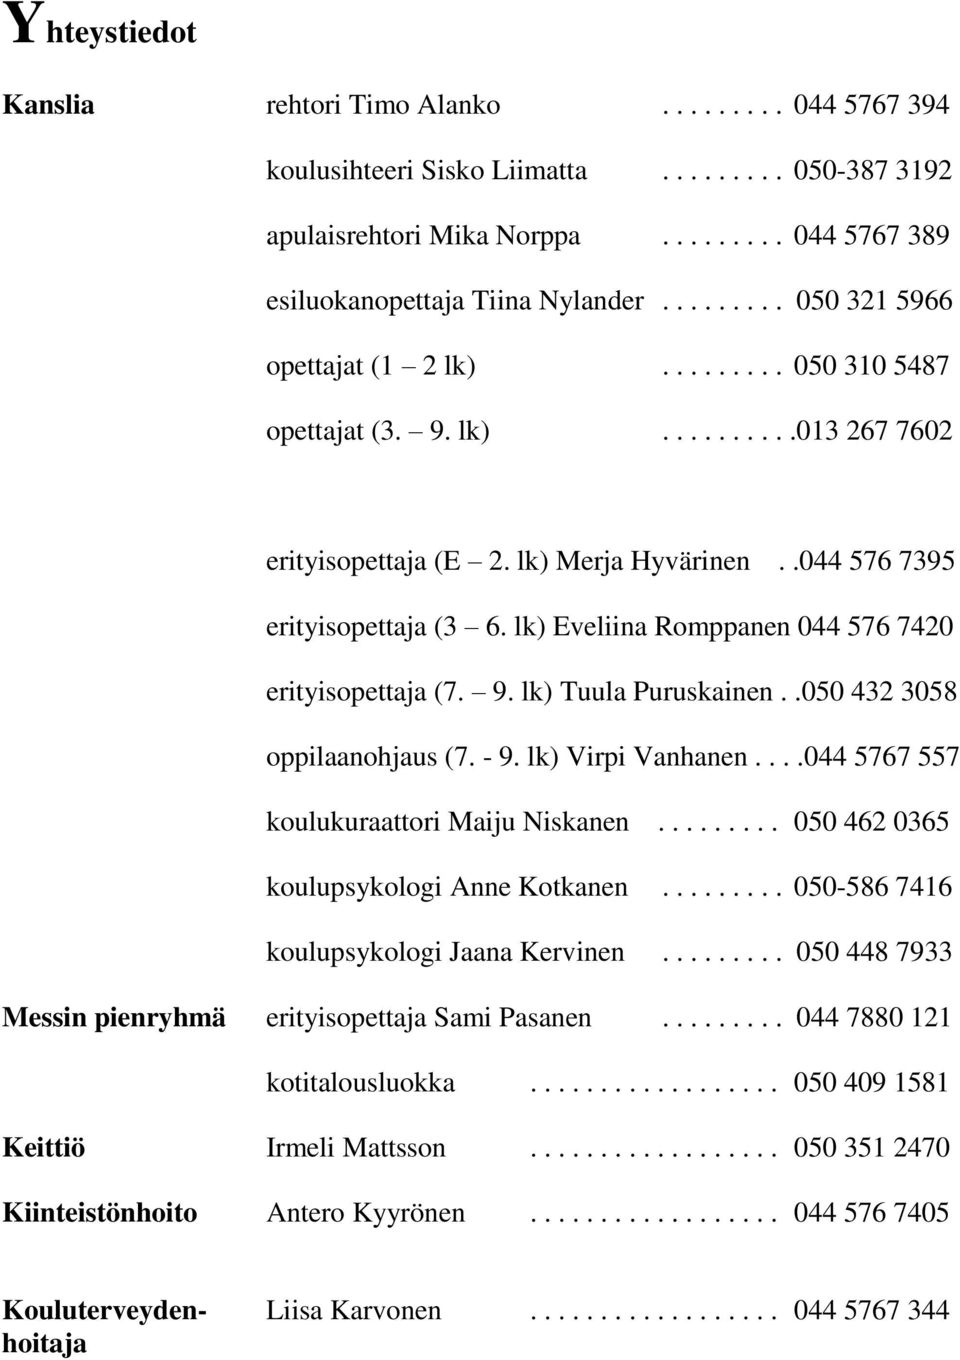 lk) Eveliina Romppanen 044 576 7420 erityisopettaja (7. 9. lk) Tuula Puruskainen..050 432 3058 oppilaanohjaus (7. - 9. lk) Virpi Vanhanen....044 5767 557 koulukuraattori Maiju Niskanen.